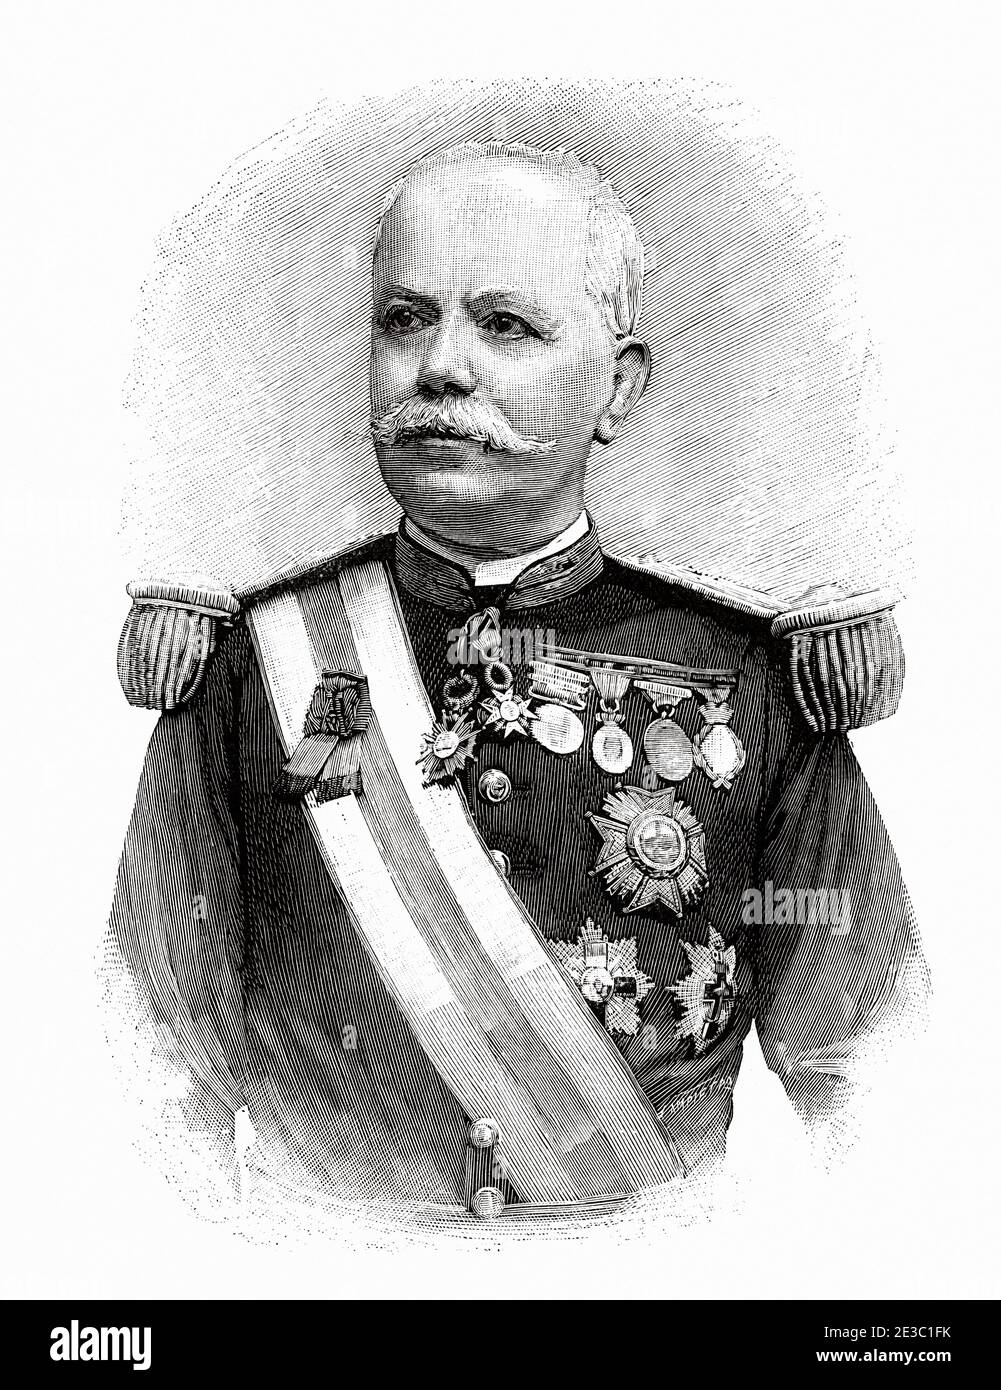 Manuel Manrique de Lara y Pazos (1832-1895). General of the Marine Corps Brigade of the Spanish army, Spain, Europe. From La Ilustracion Española y Americana 1895 Stock Photo